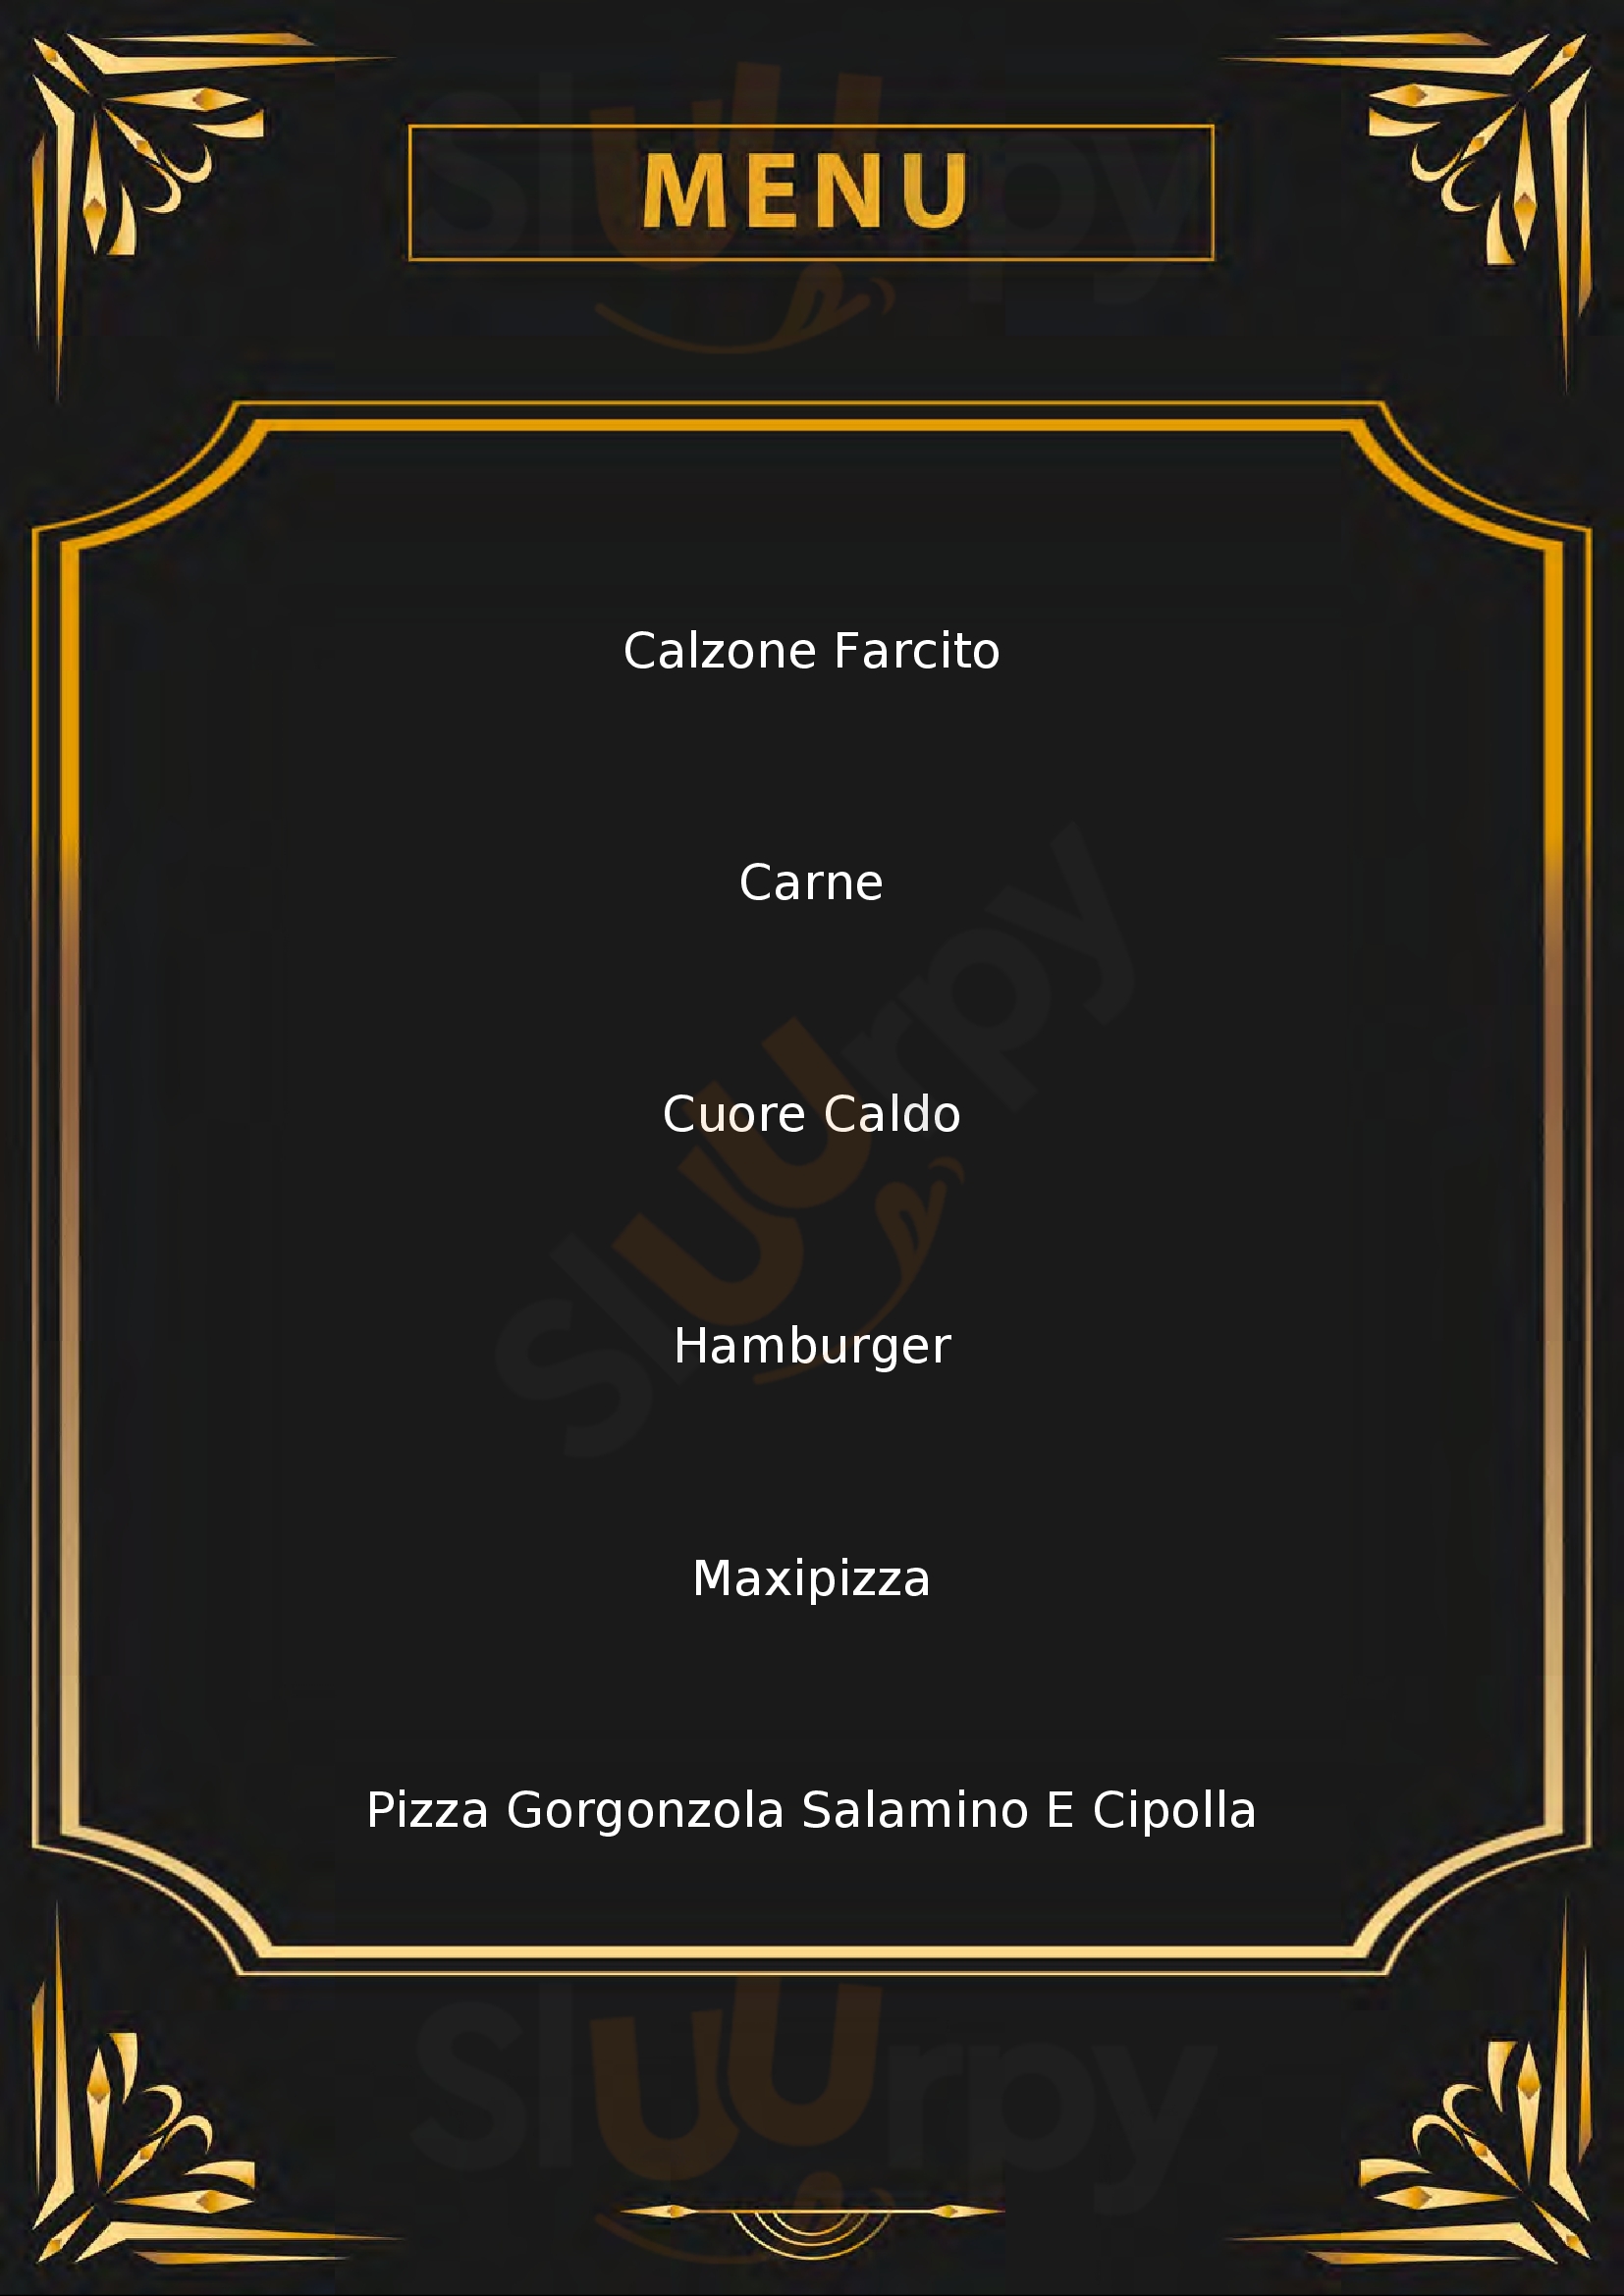 Pizzeria Mezzaluna Orciano Pisano menù 1 pagina